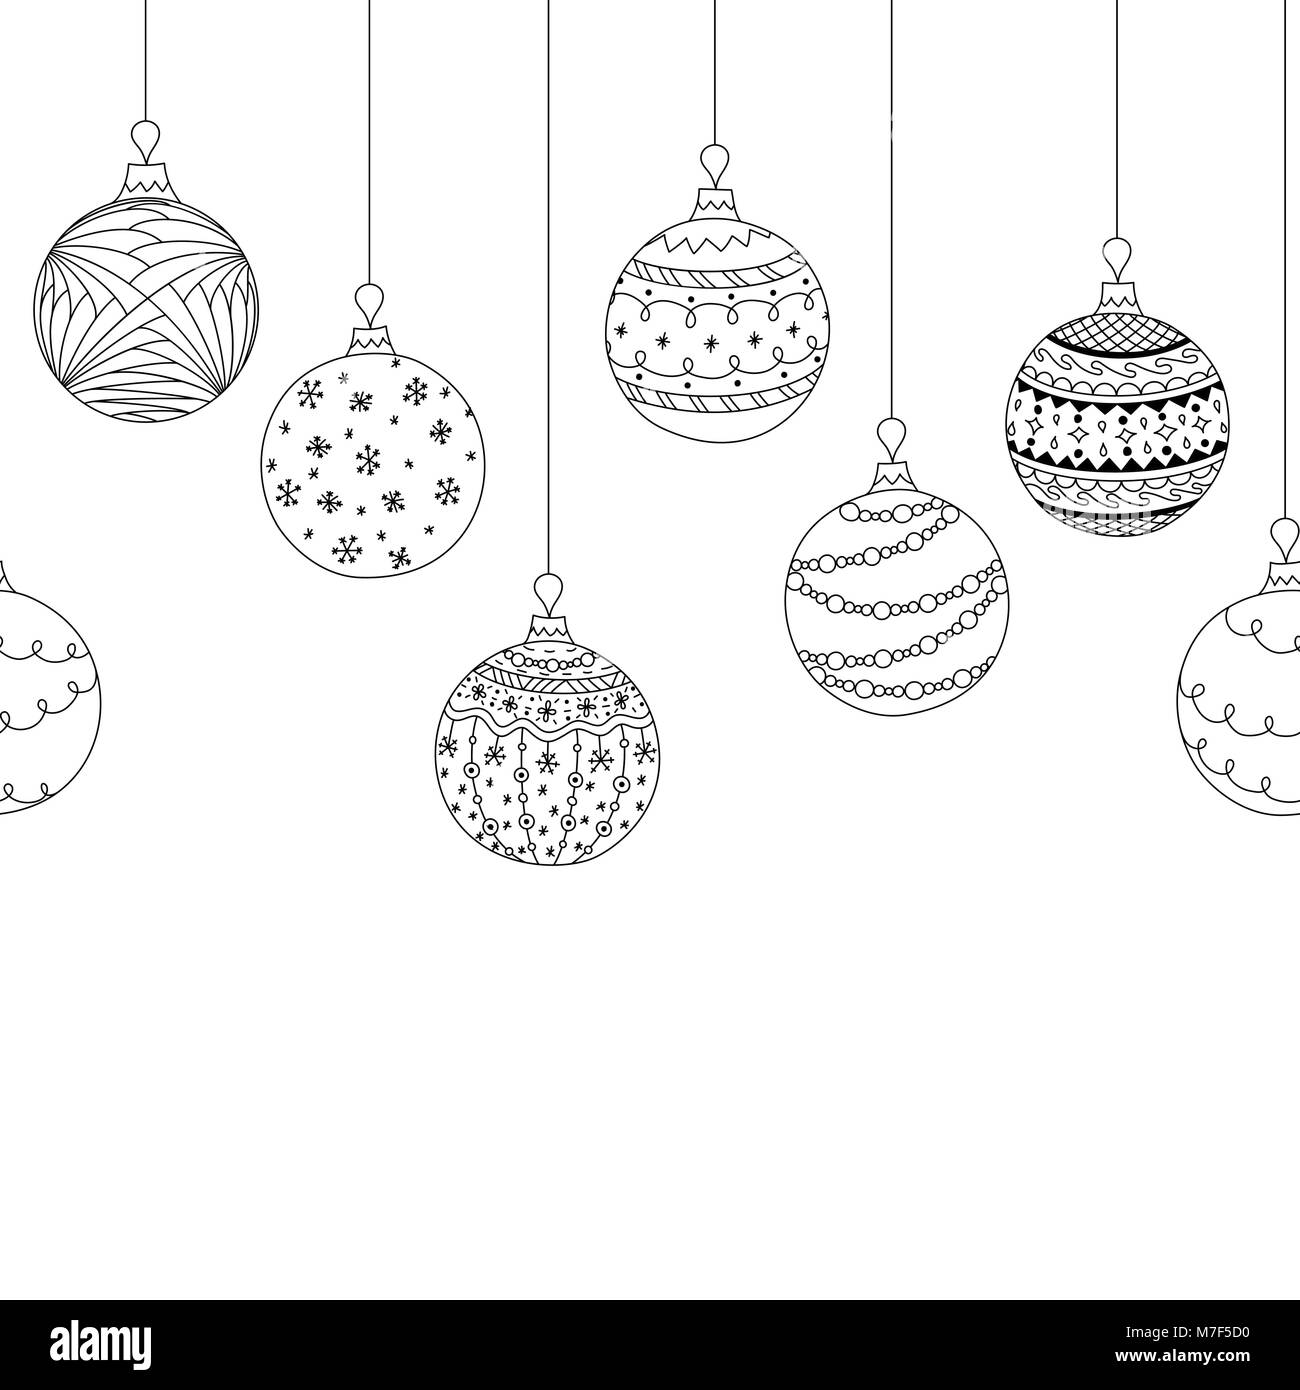 Vektor nahtlose dekorative Grenze von Hand zeichnen christmas tree Ball Spielzeug. Gruß Einladung Weihnachten Hintergrund. Färbung Seite Buch Stock Vektor